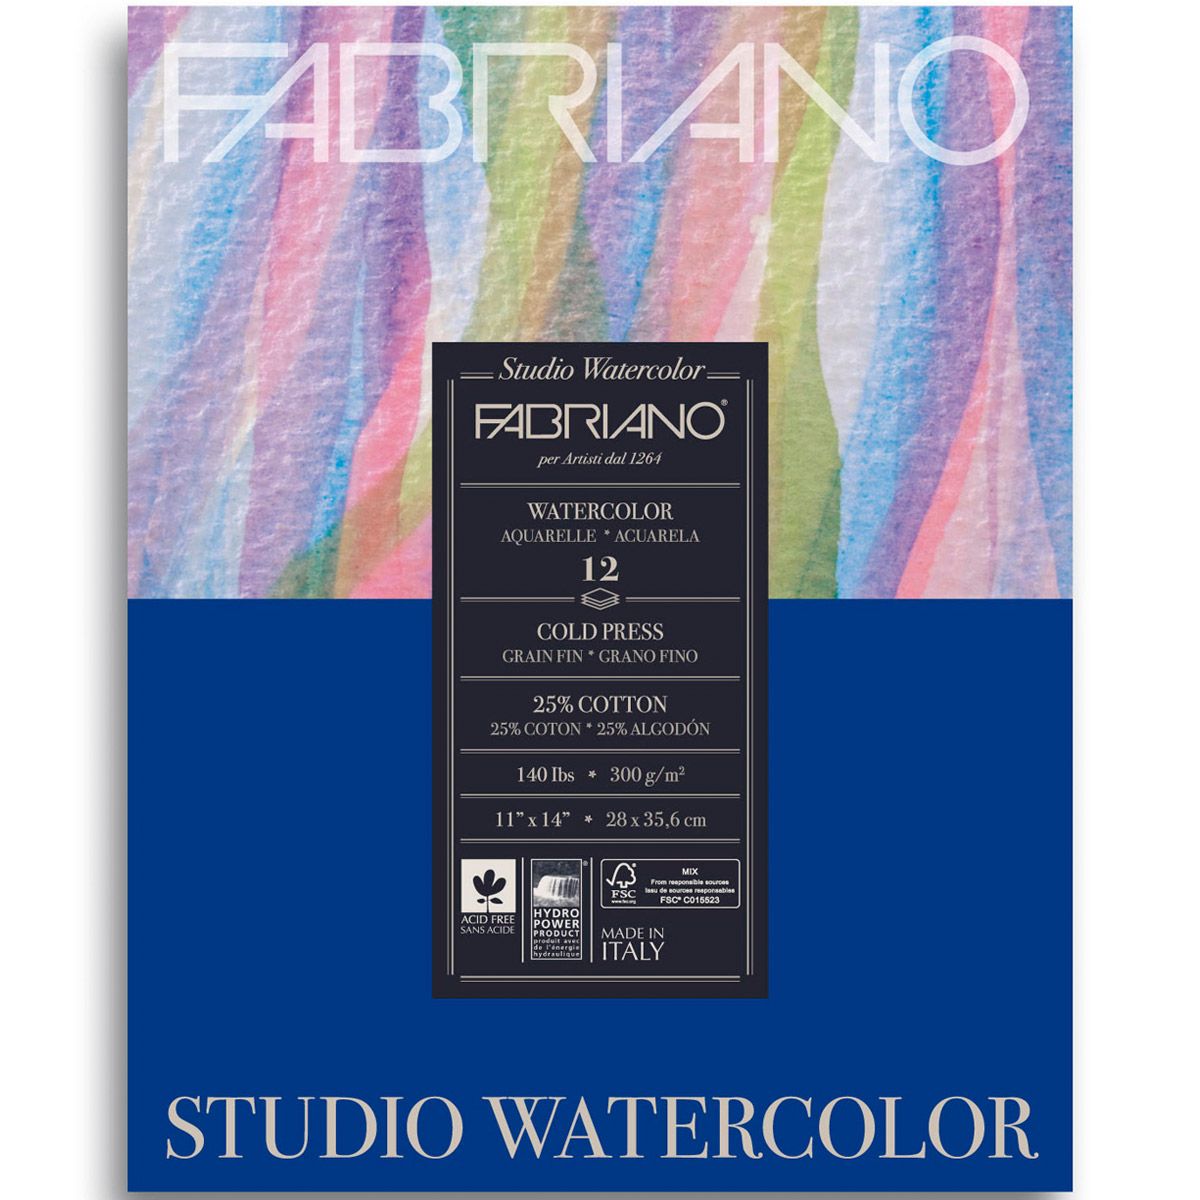 Fabriano Studio Watercolour CP 12 Shts. Pad, 140lb 11x14 inch